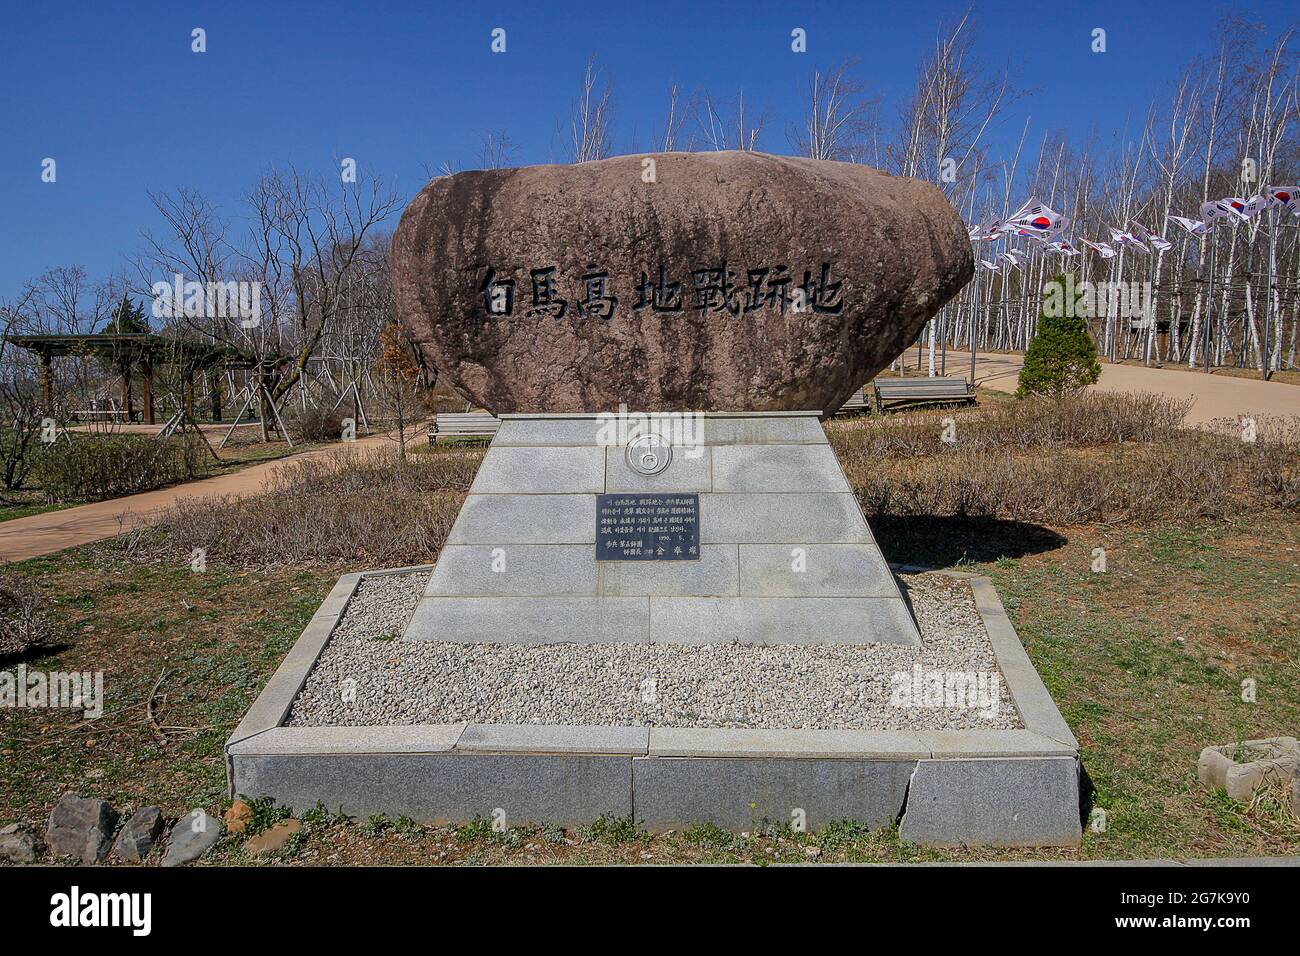 11 avril 2018-Goyang, Corée du Sud-UNE vue de la guerre de Corée bataille de cheval blanc monument commémoratif à Cheorwon, Corée du Sud. La bataille de White Horse fut une autre d'une série de batailles sanglantes pour les positions dominantes sur les collines pendant la guerre de Corée. Baengma-goji était une colline de 395 mètres (1,296 pieds) dans le triangle de fer, formé par Pyonggang à son sommet et Gimhwa-eup et Cheorwon à sa base, était une voie de transport stratégique dans la région centrale de la péninsule coréenne. White Horse était la crête d'une masse de collines boisées qui s'étendait du nord-ouest au sud-est sur environ 3 km (3 milles), en pennsylvanie Banque D'Images